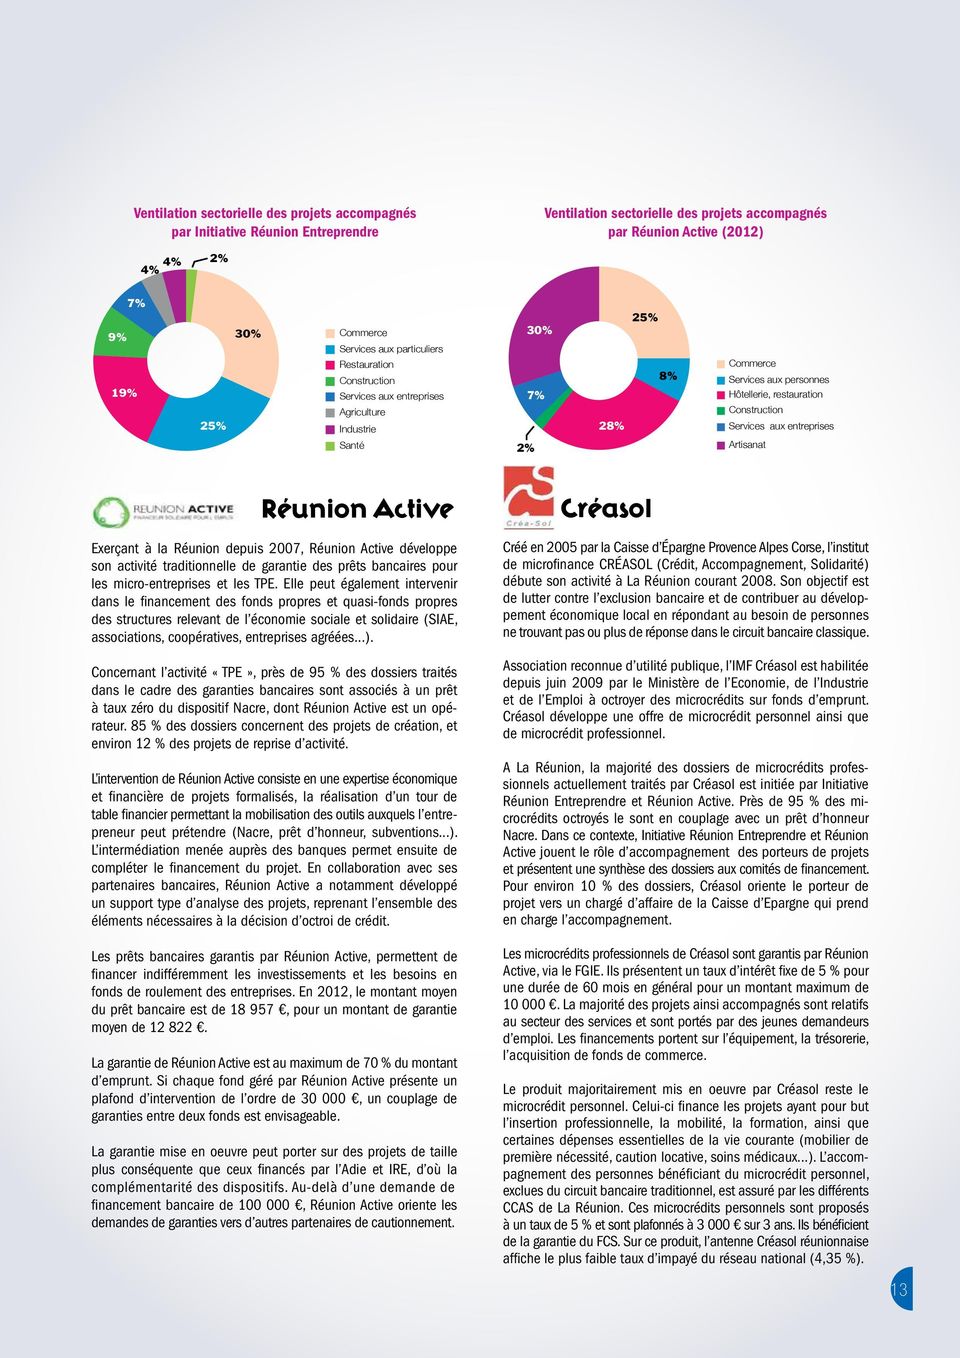 entreprises 2% Artisanat Réunion Active Exerçant à la Réunion depuis 27, Réunion Active développe son activité traditionnelle de garantie des prêts bancaires pour les micro-entreprises et les TPE.